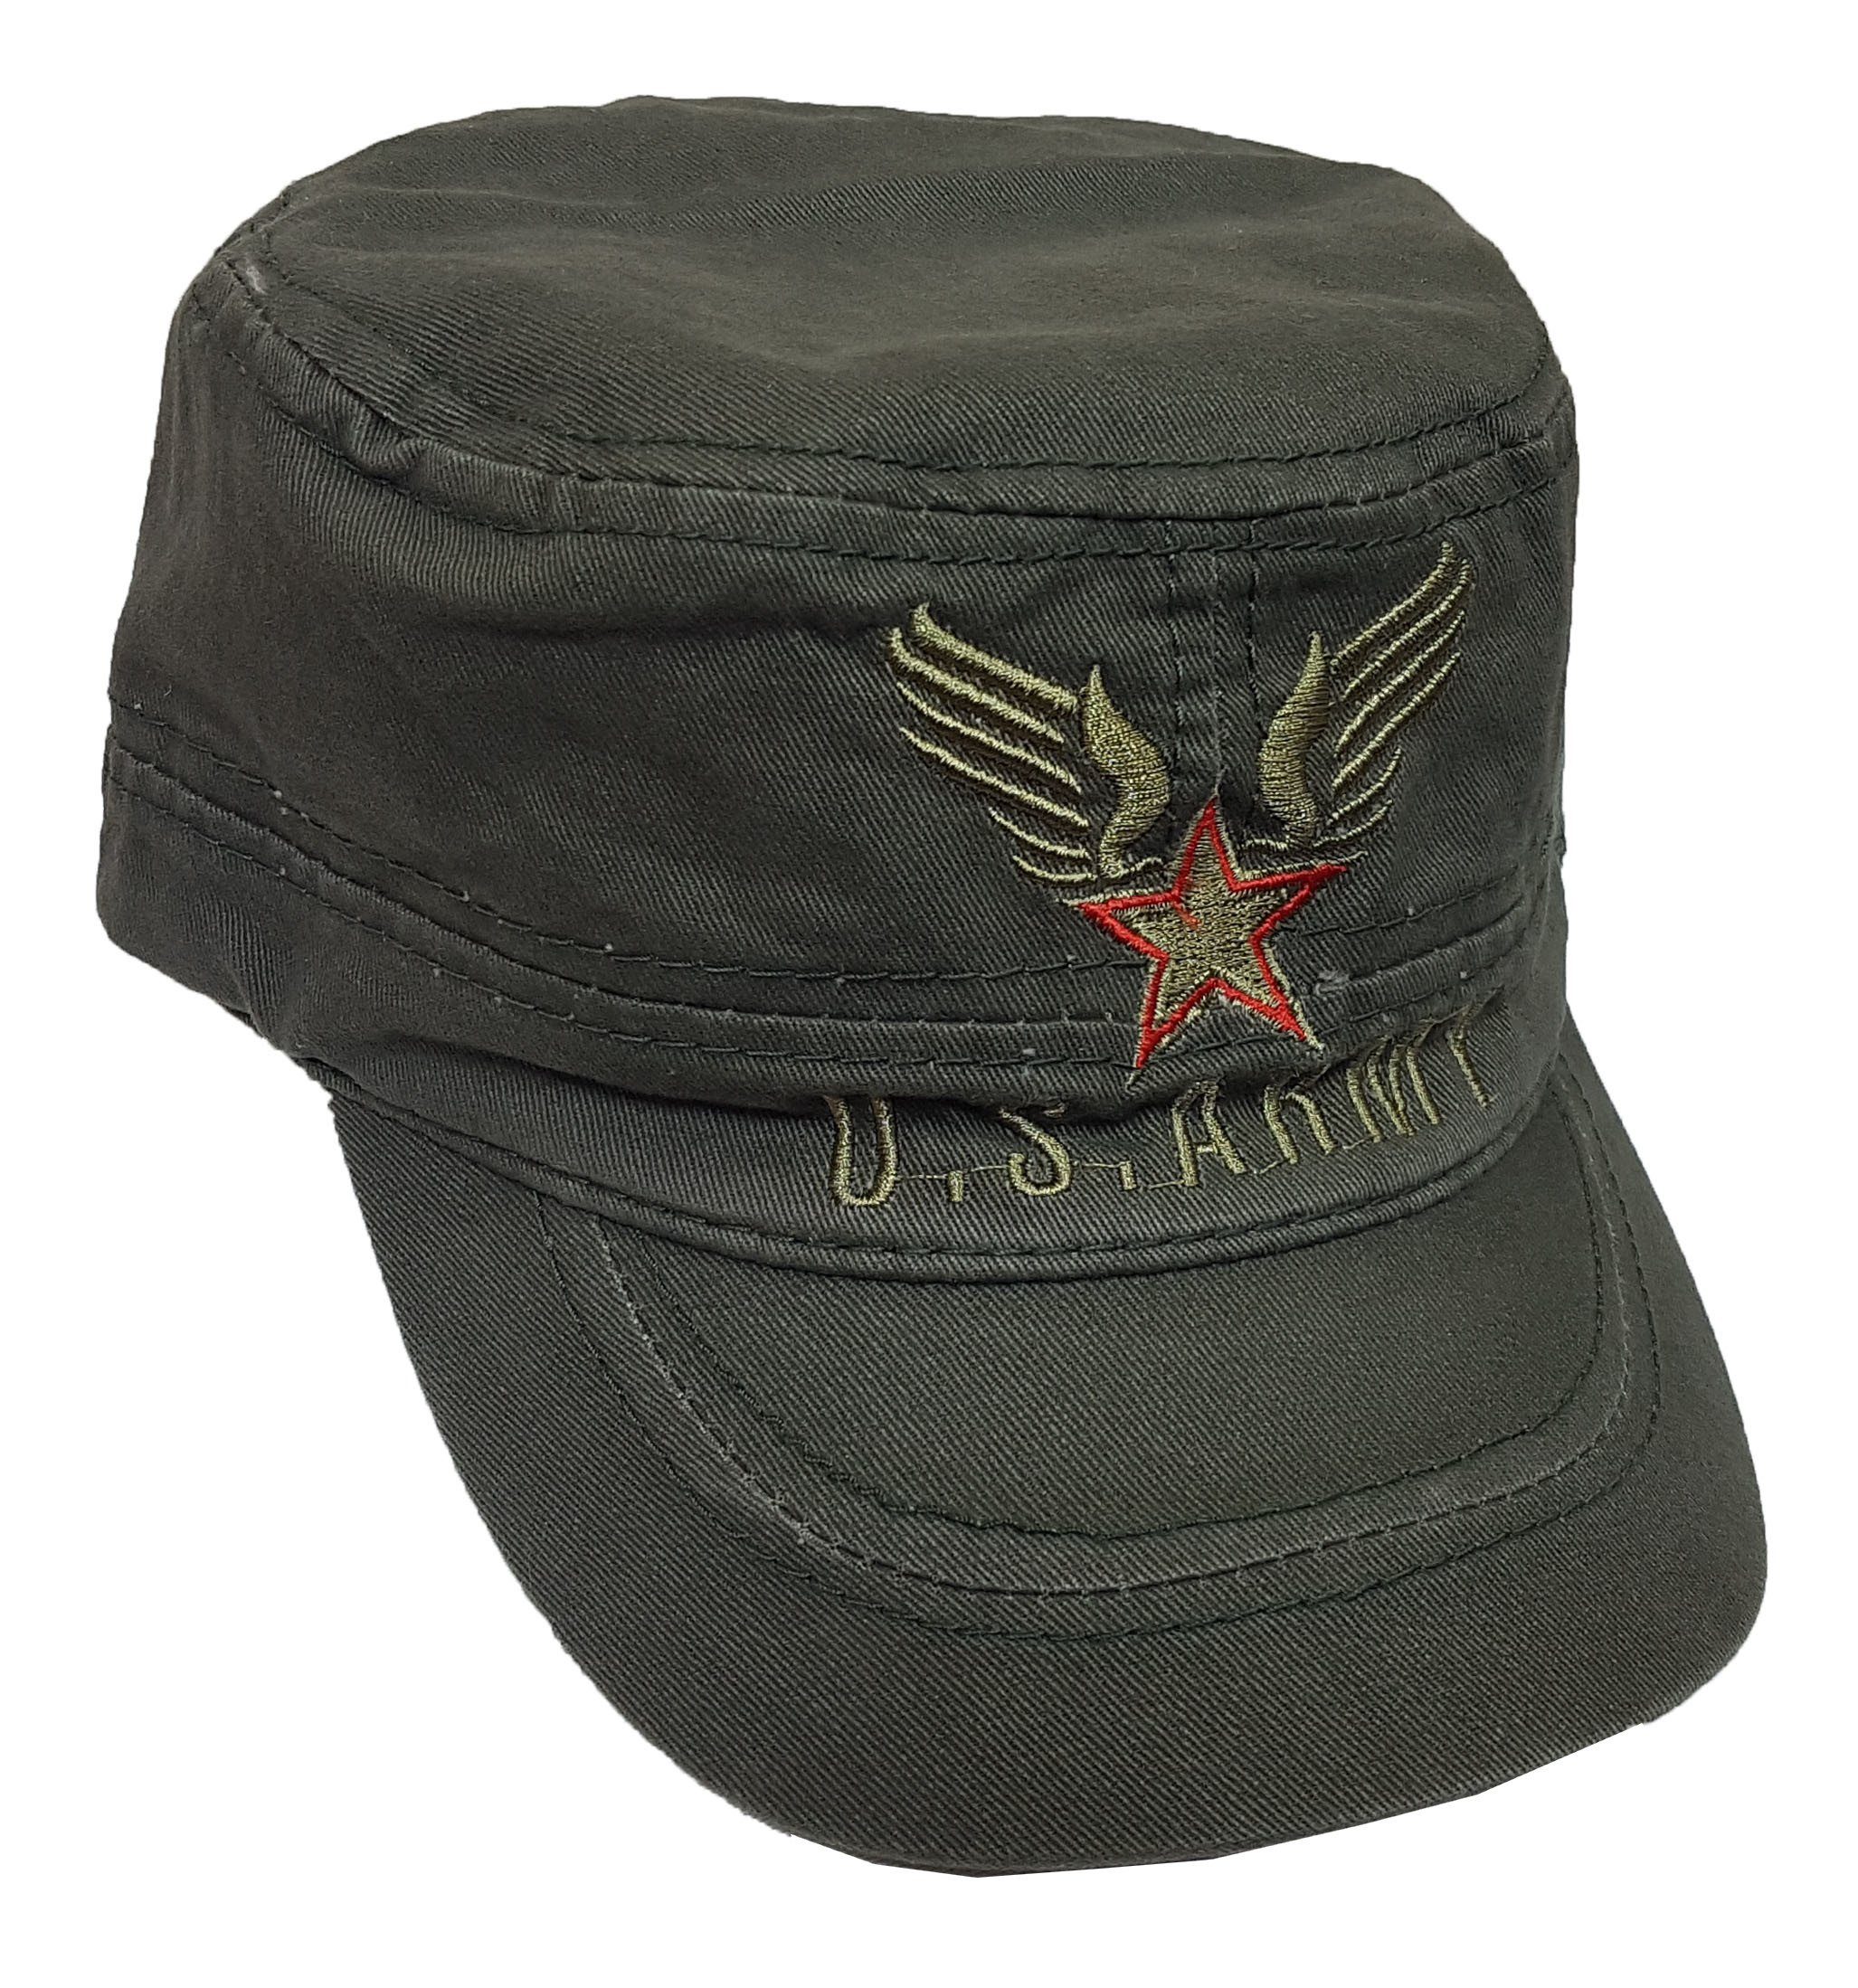 Einkaufszauber Schirmmütze US Army Cap - Militär Mütze army design